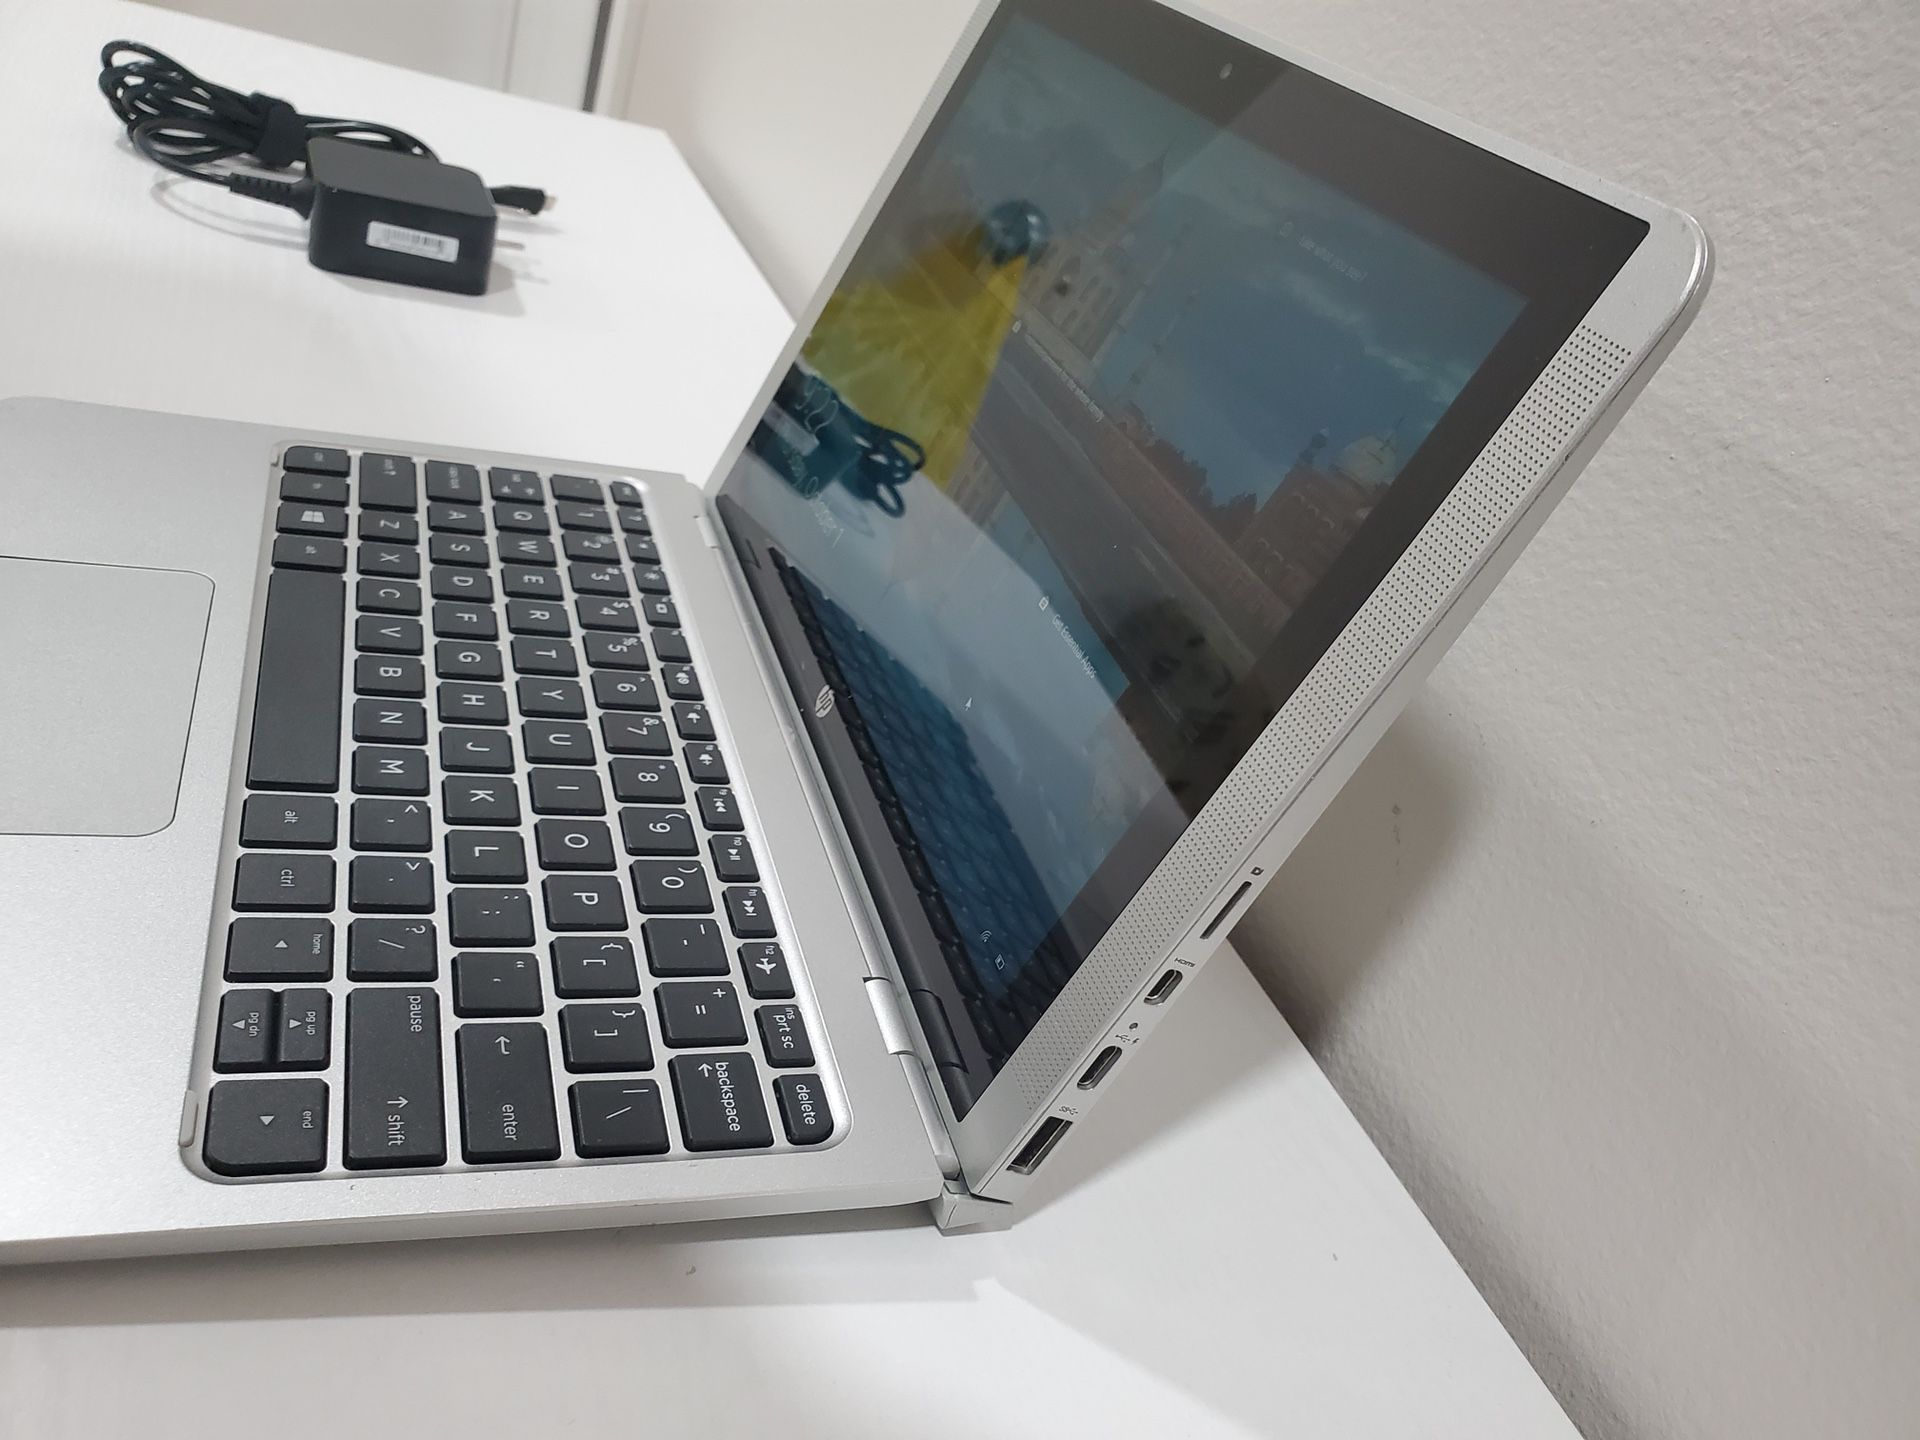 Laptop HP x2 - 10-p018wm Intel® Atom™ x5-Z8350 4 GB RAM 64 GB SSD Notebook PC Windows 10 hp dell apple